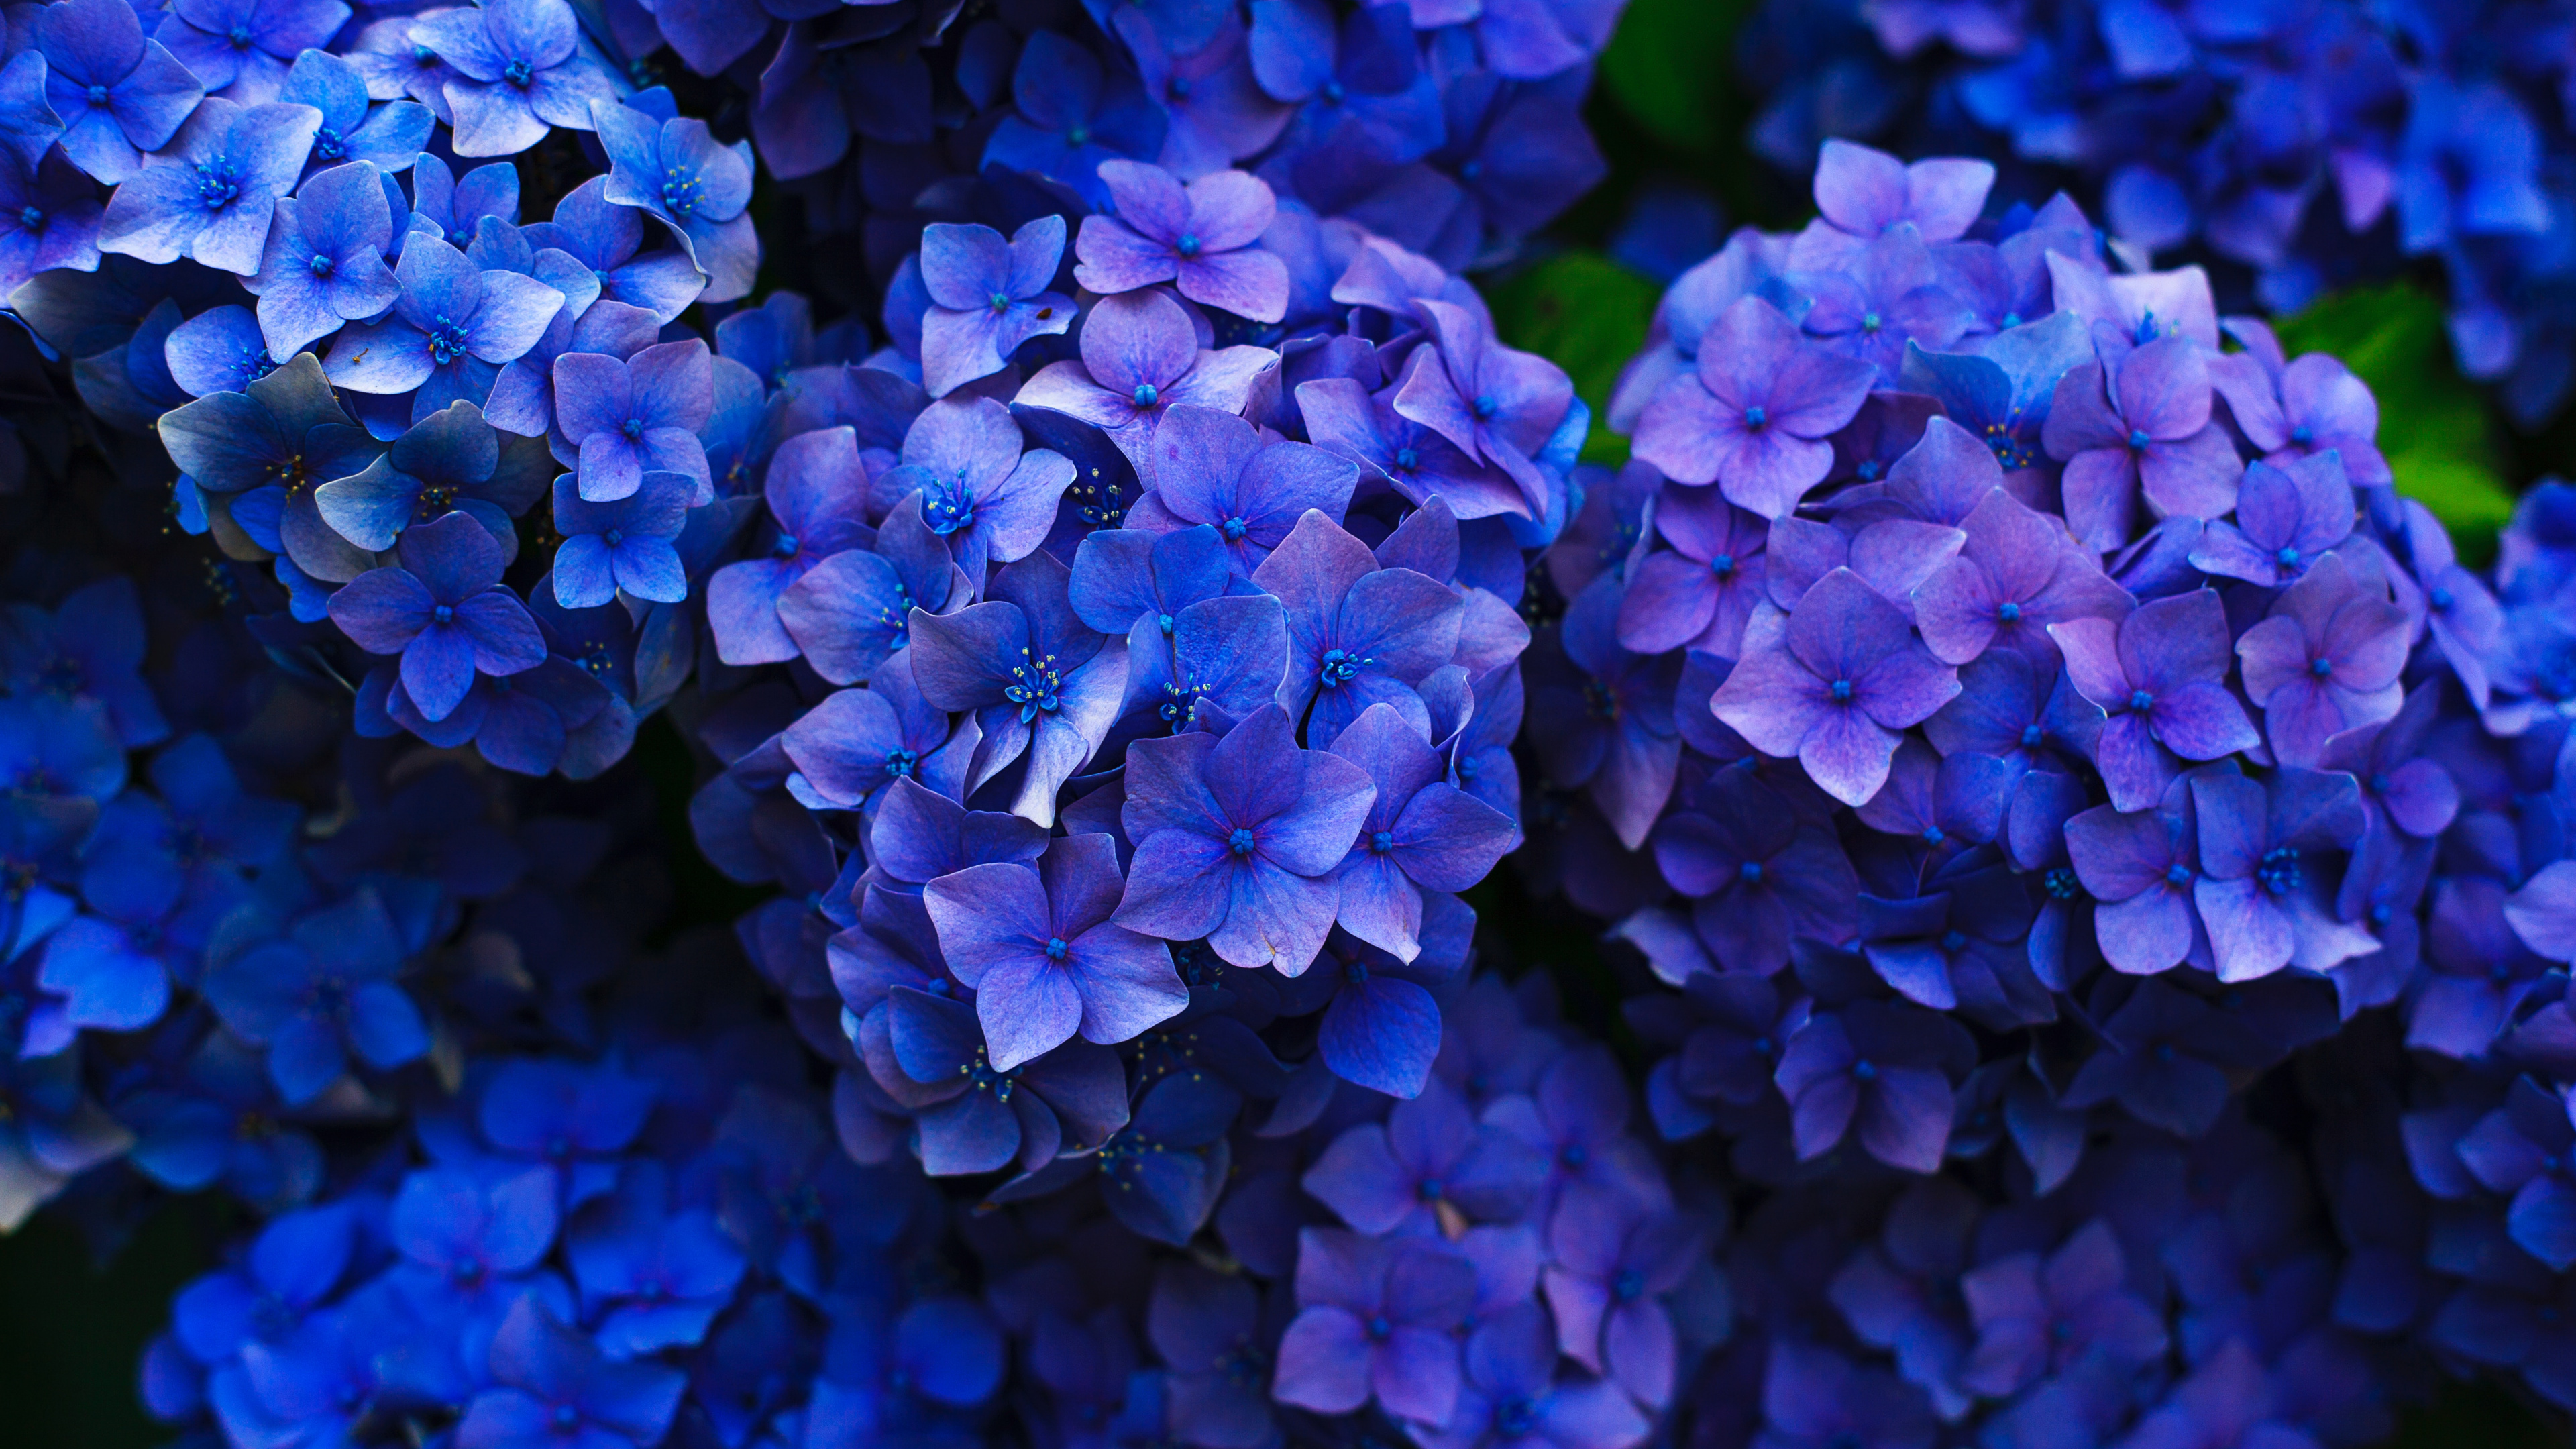 法国的绣球花, 灌木, 钴蓝色的, 紫色的, 紫罗兰色 壁纸 3840x2160 允许